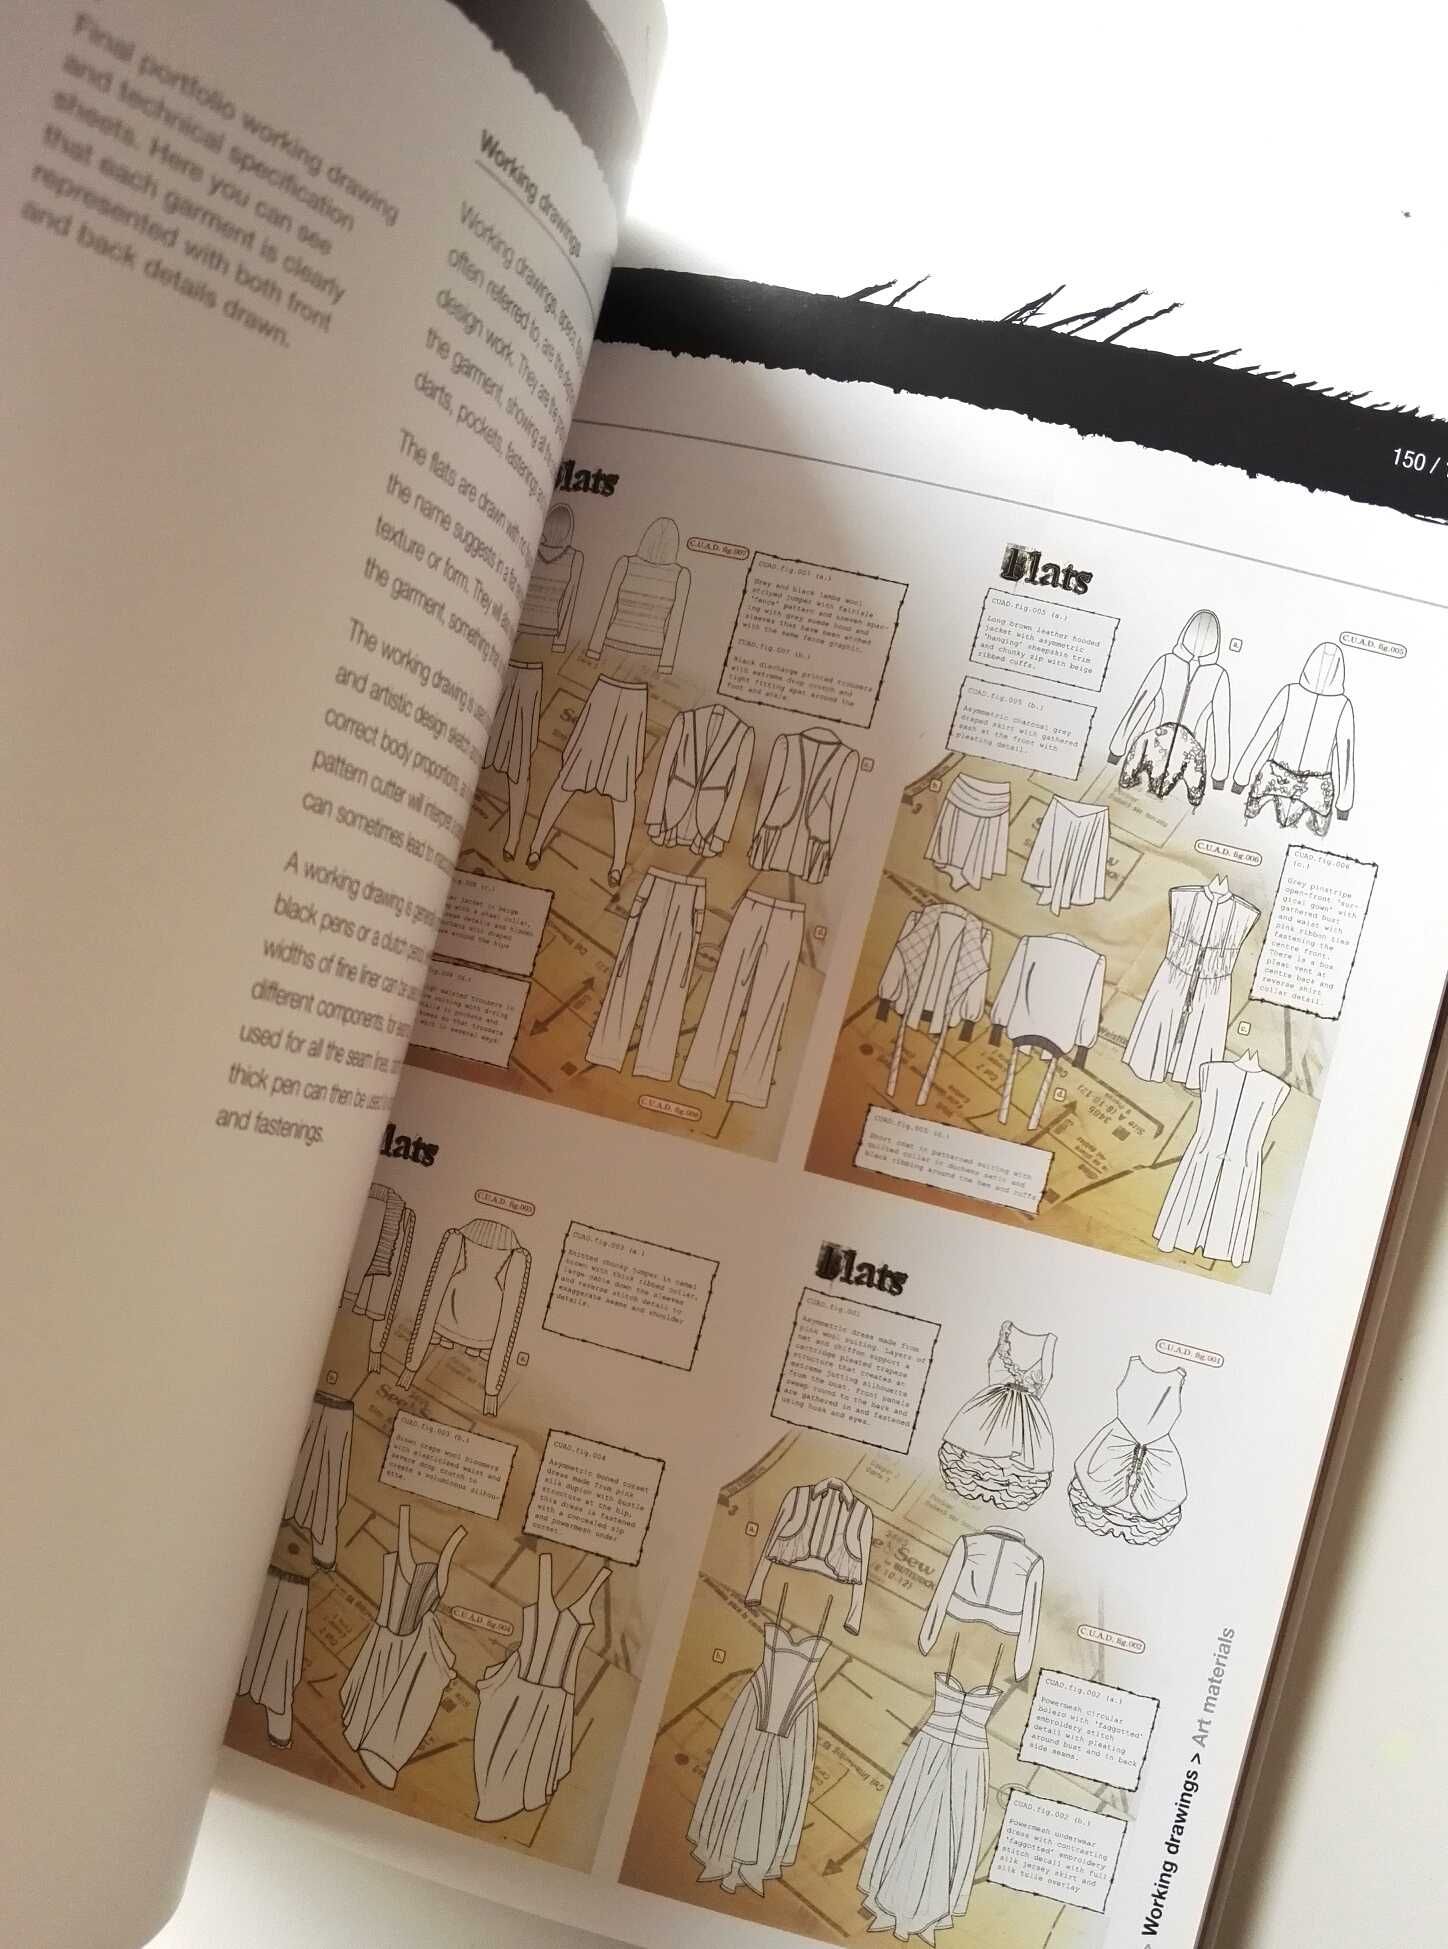 Livro de moda "Research and design" de Simon Seivewright